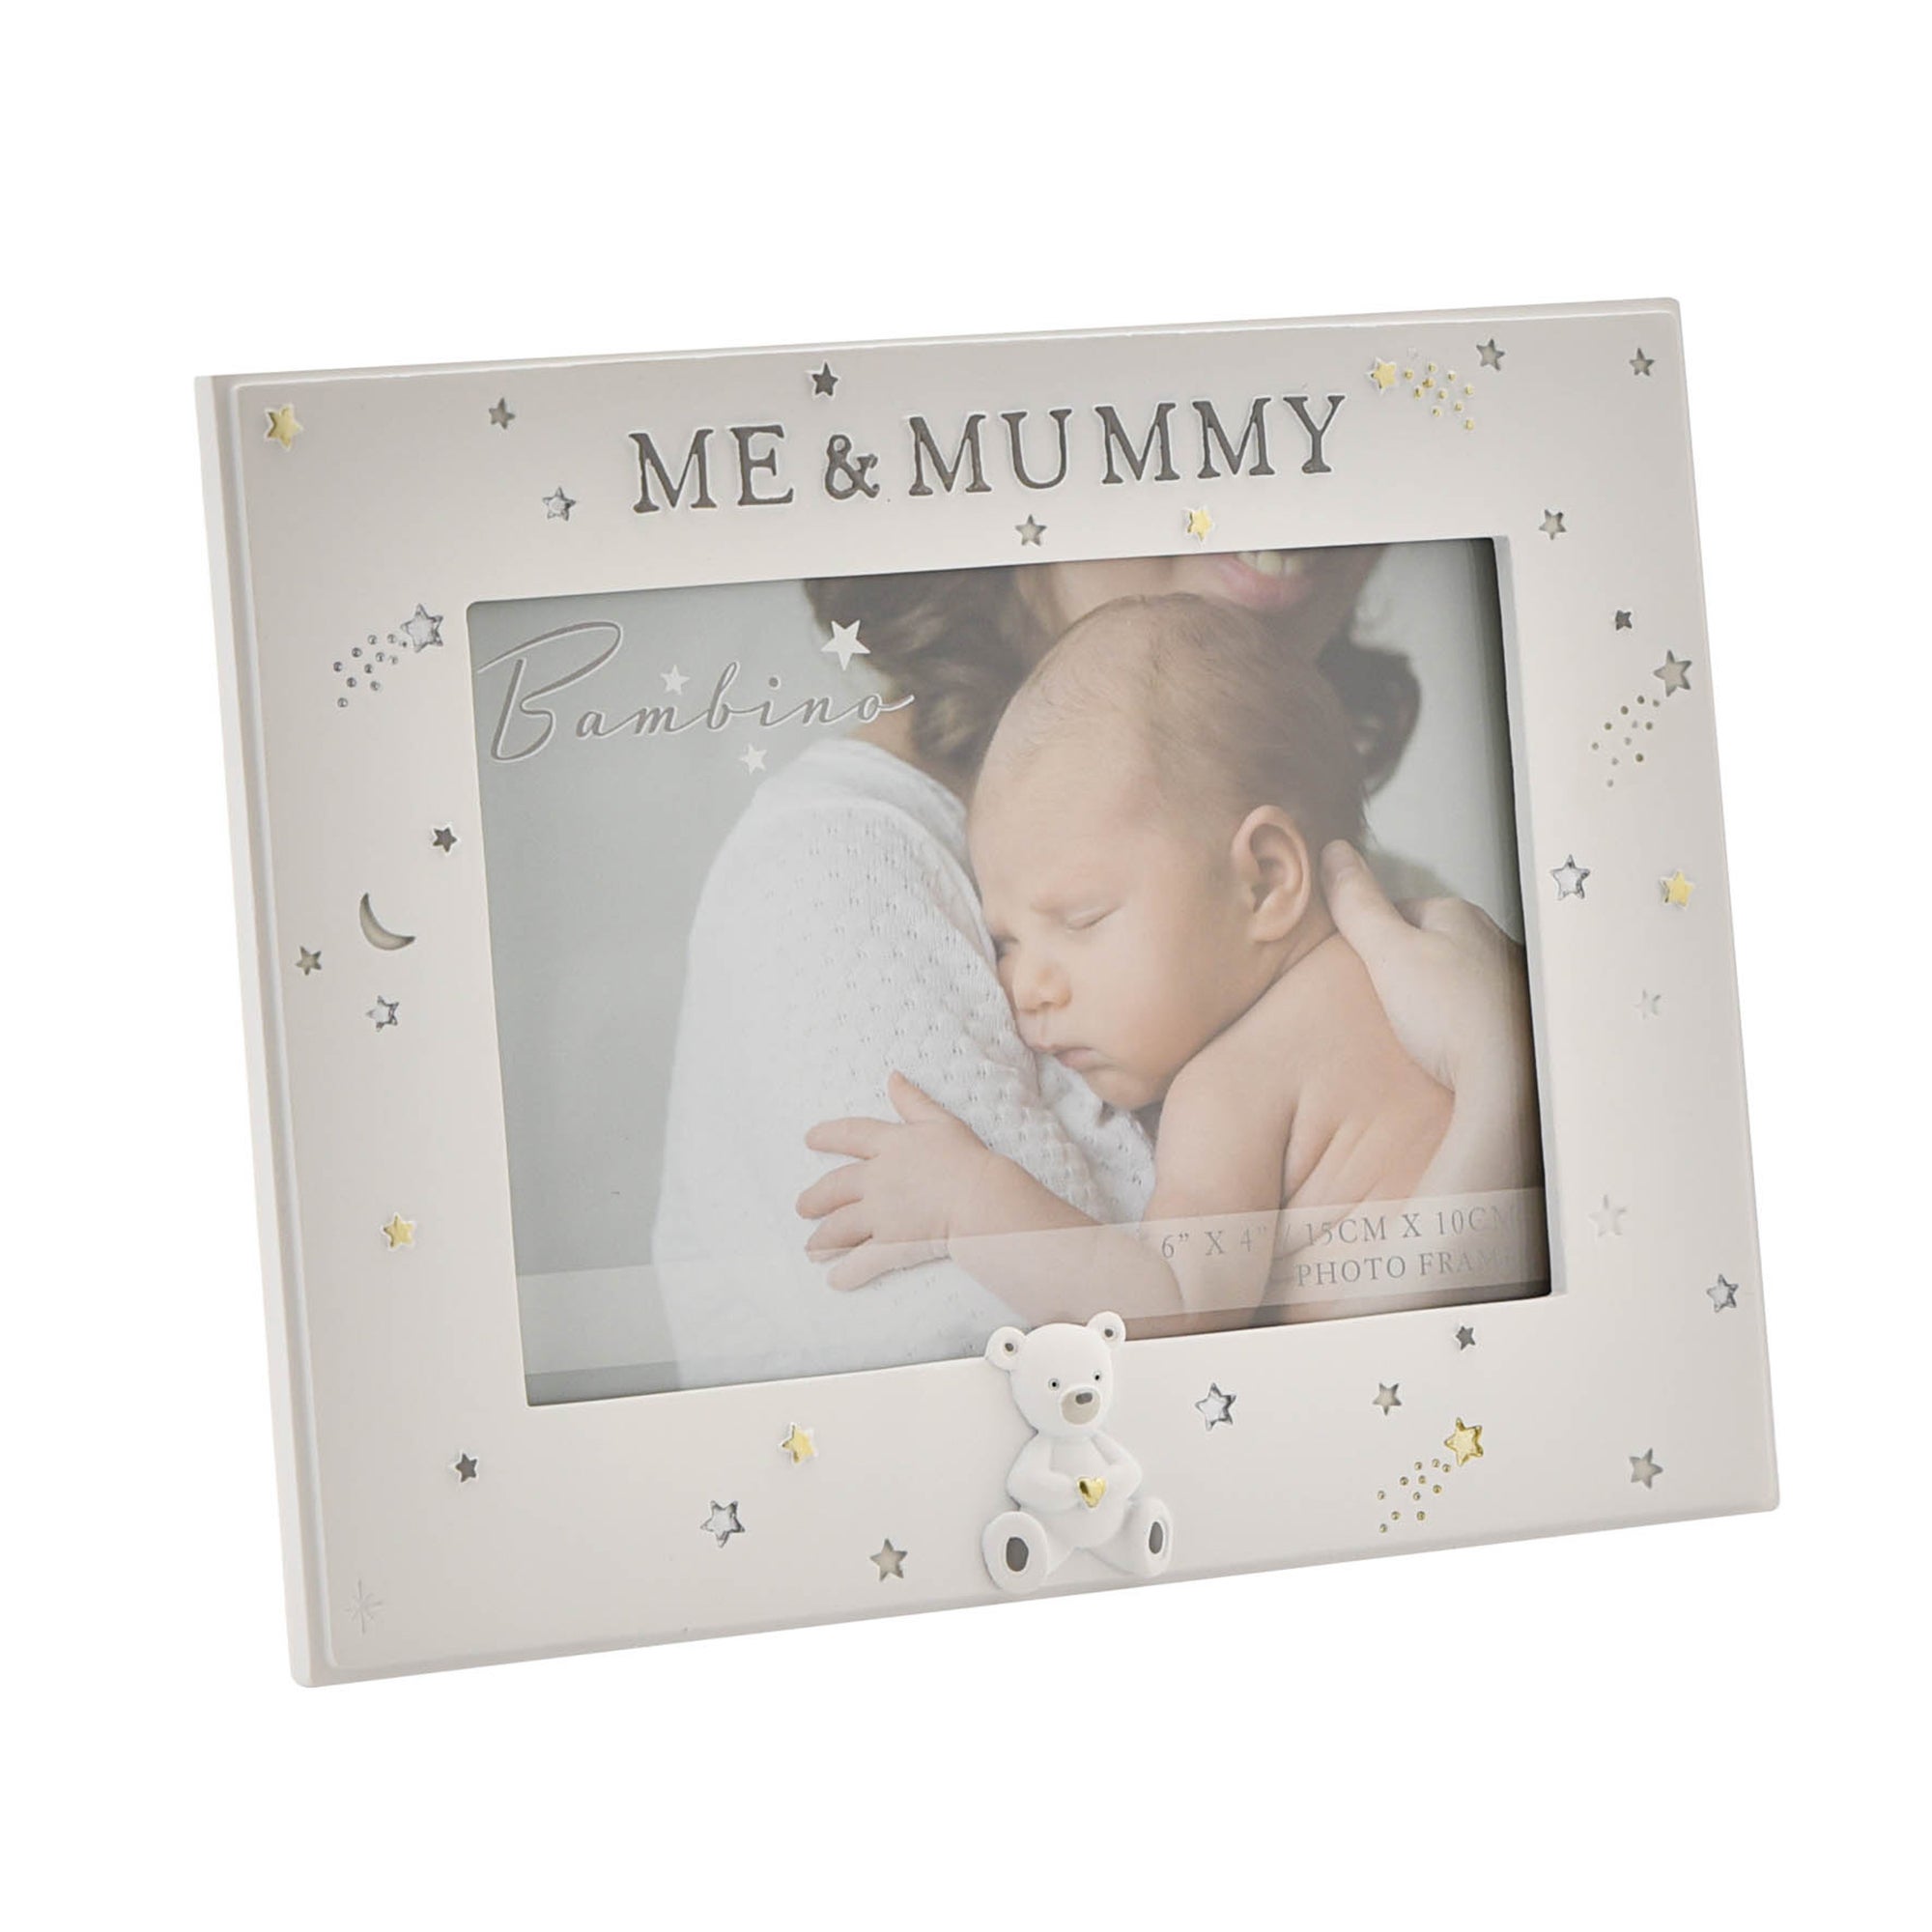 Photos - Photo Frame / Album Bambino Resin Mummy & Me Photo Frame White 